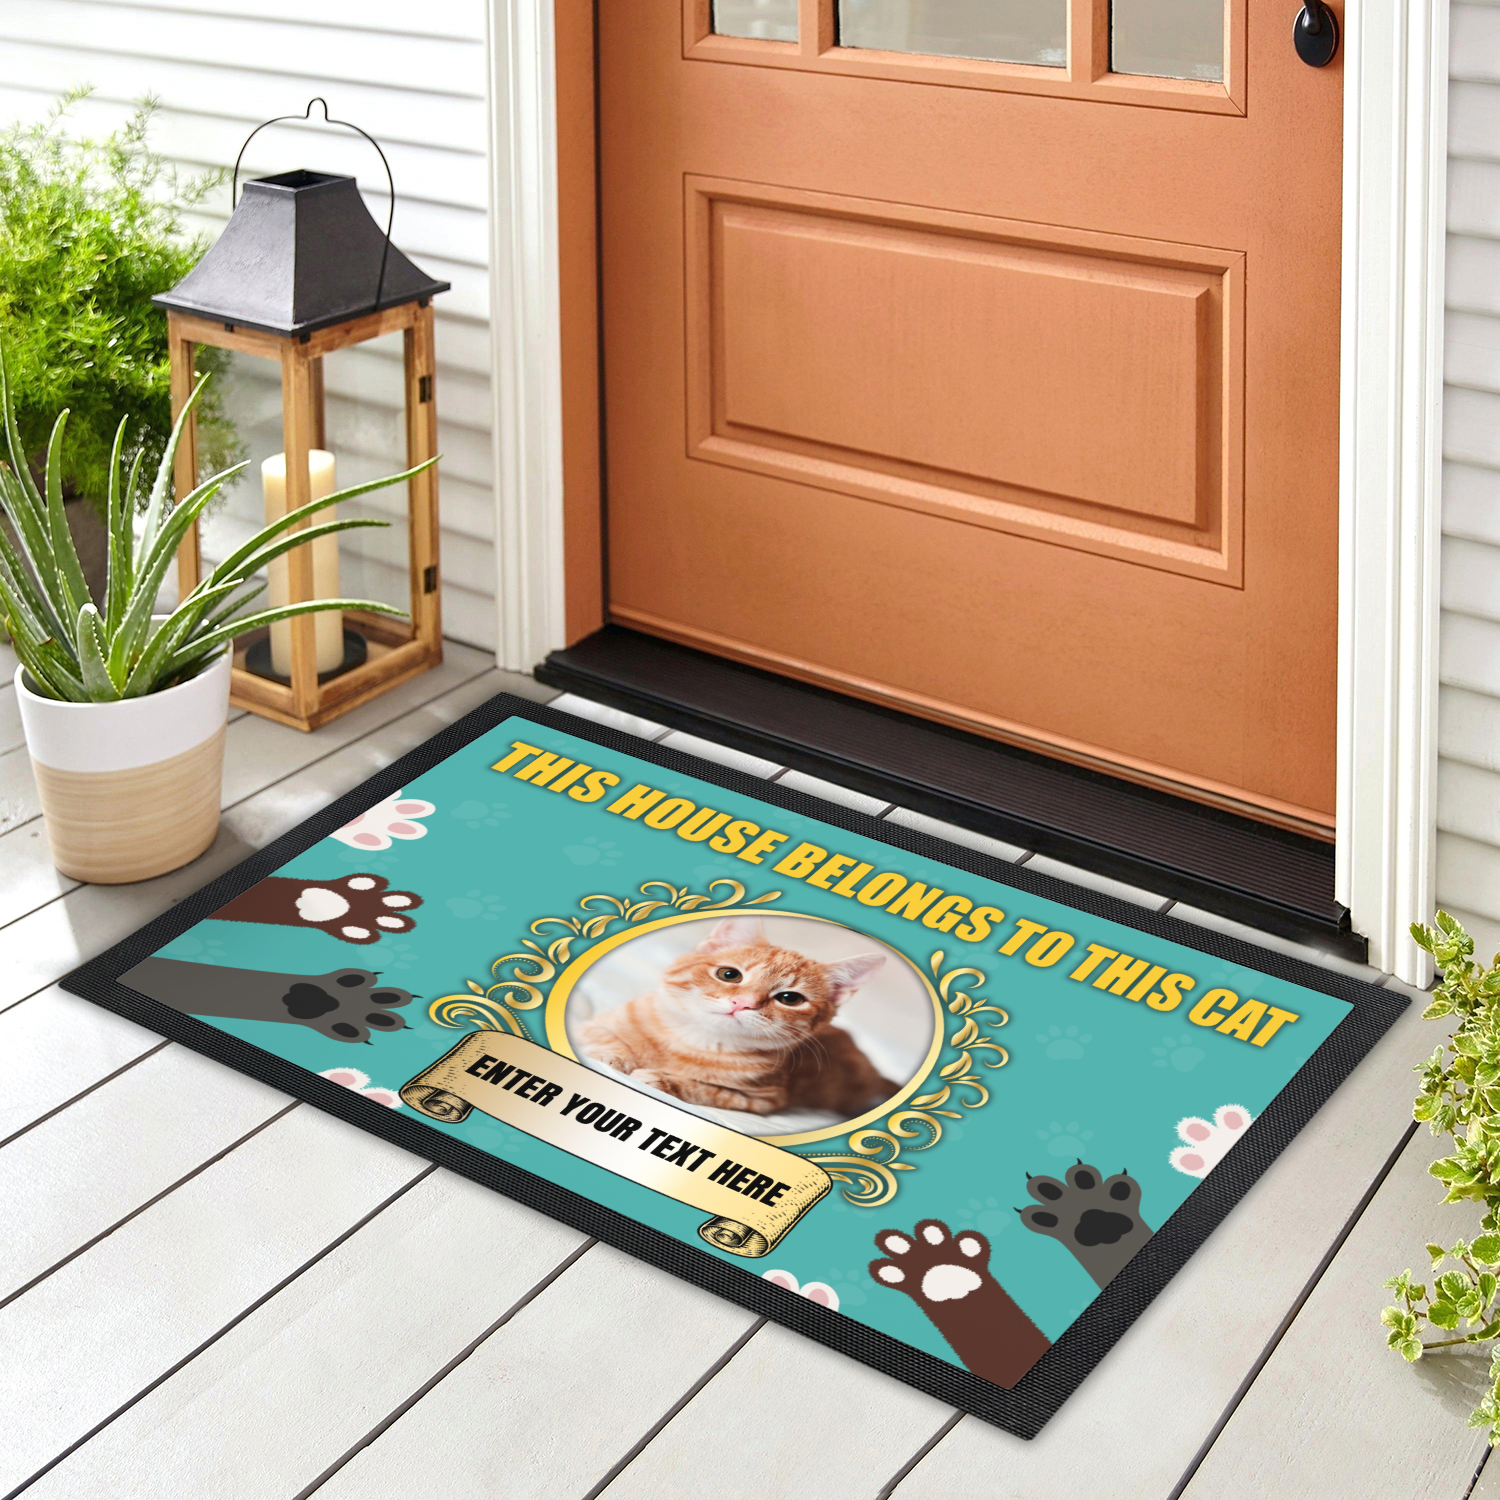 Personalized Doormat - This House Belongs To - Custom Doormat 